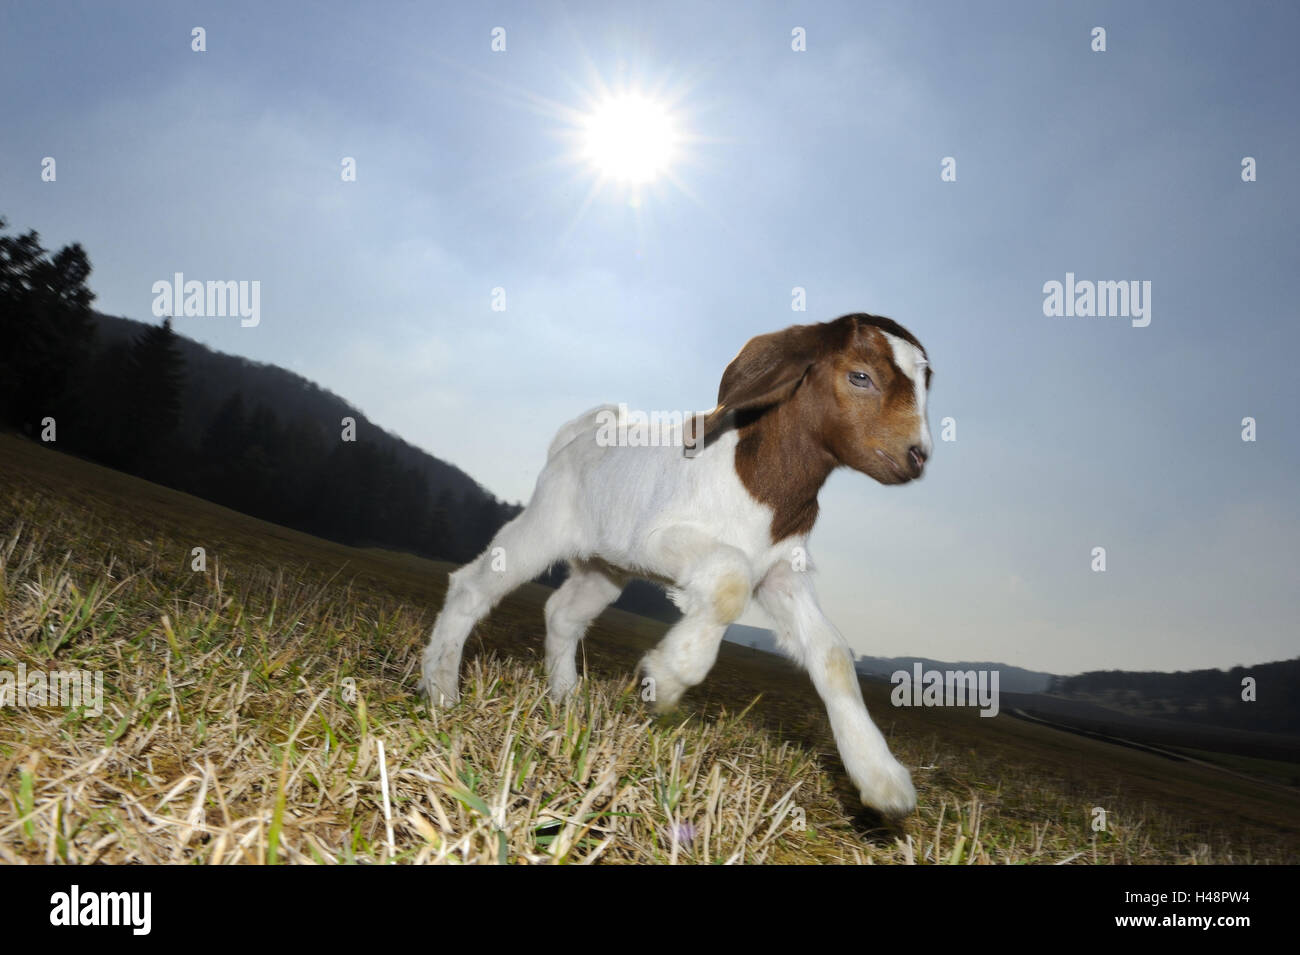 Boer goat, kid, Stock Photo